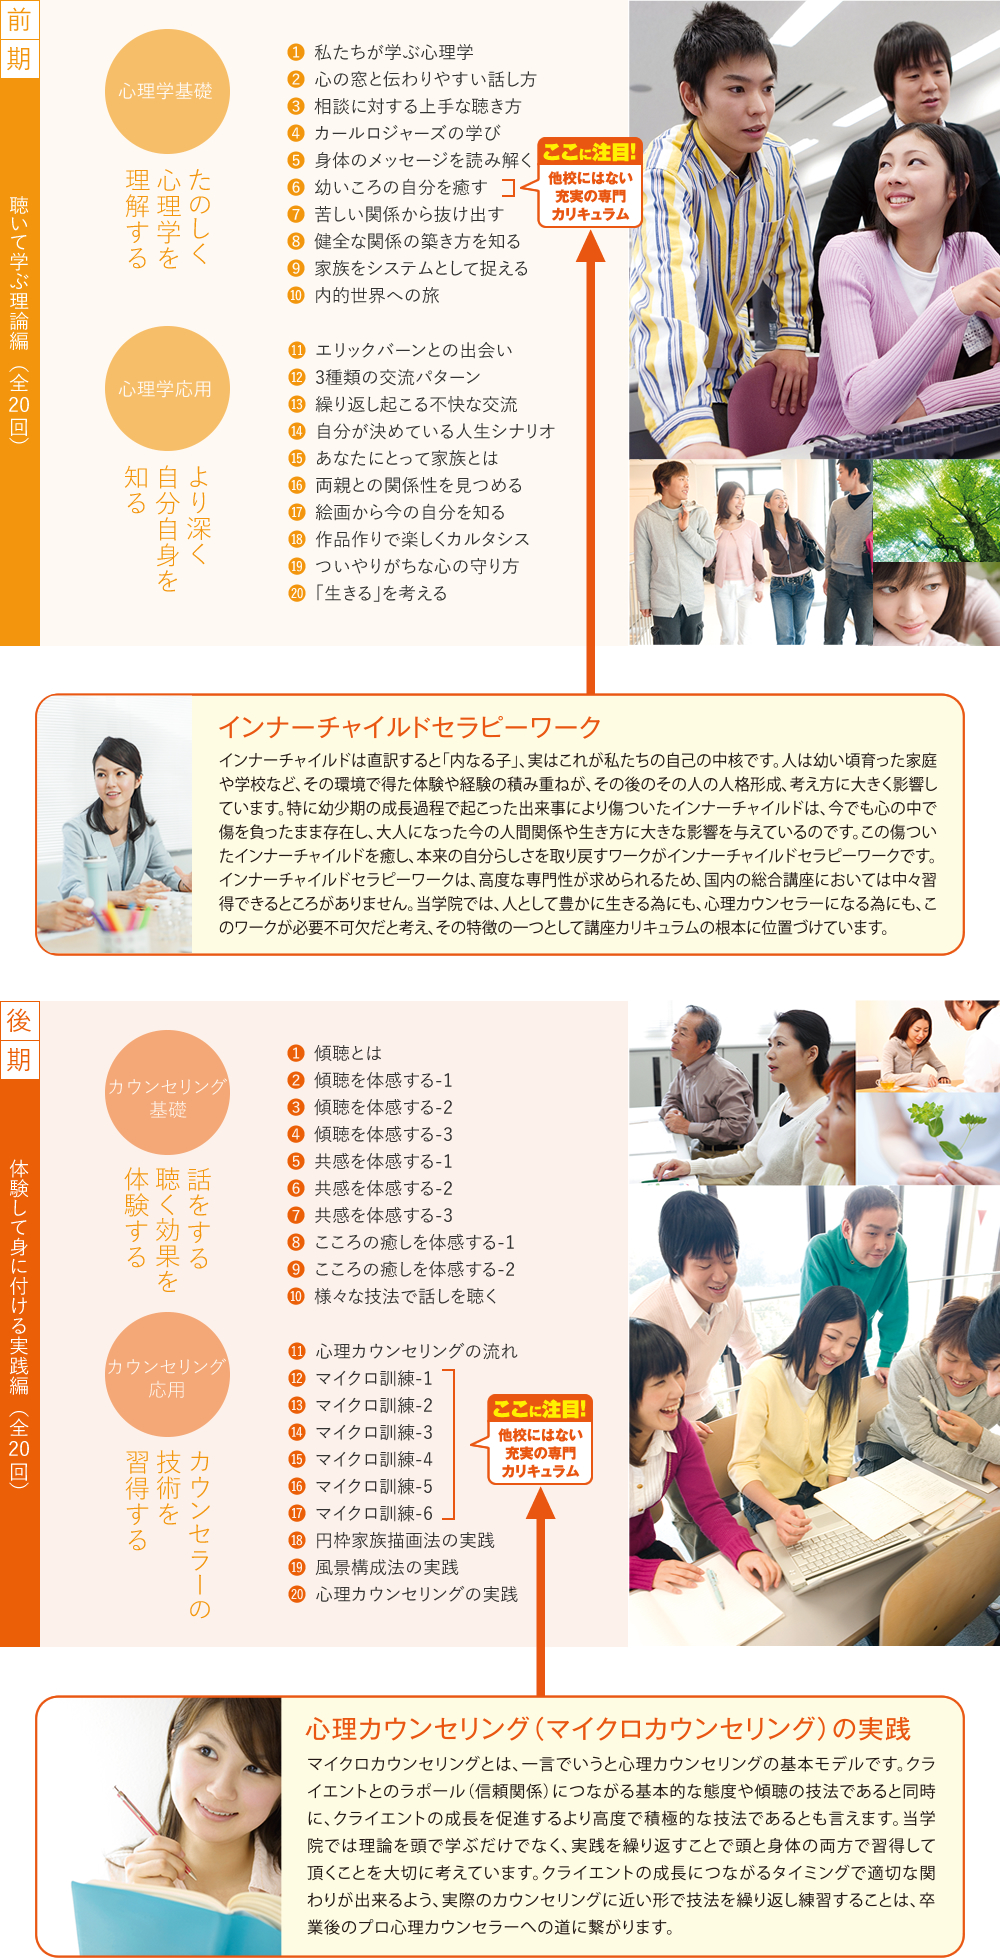 心理カウンセラーの資格取得 日本心理カウンセラー養成学院